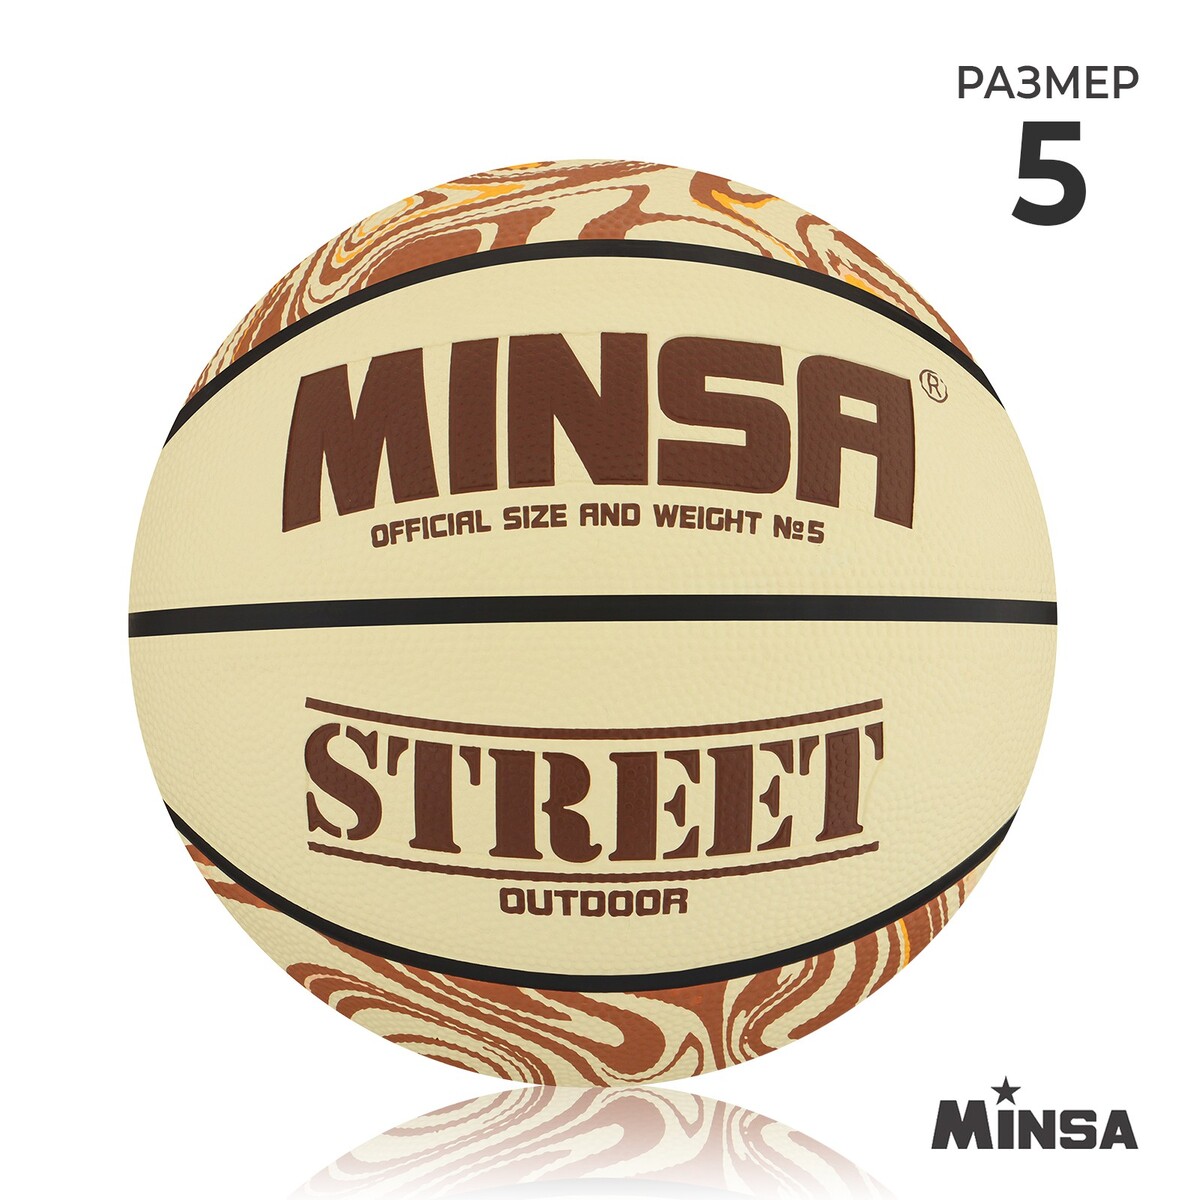 Мяч баскетбольный minsa street, пвх, клееный, 8 панелей, р. 5 мяч баскетбольный minsa пвх клееный 8 панелей р 5